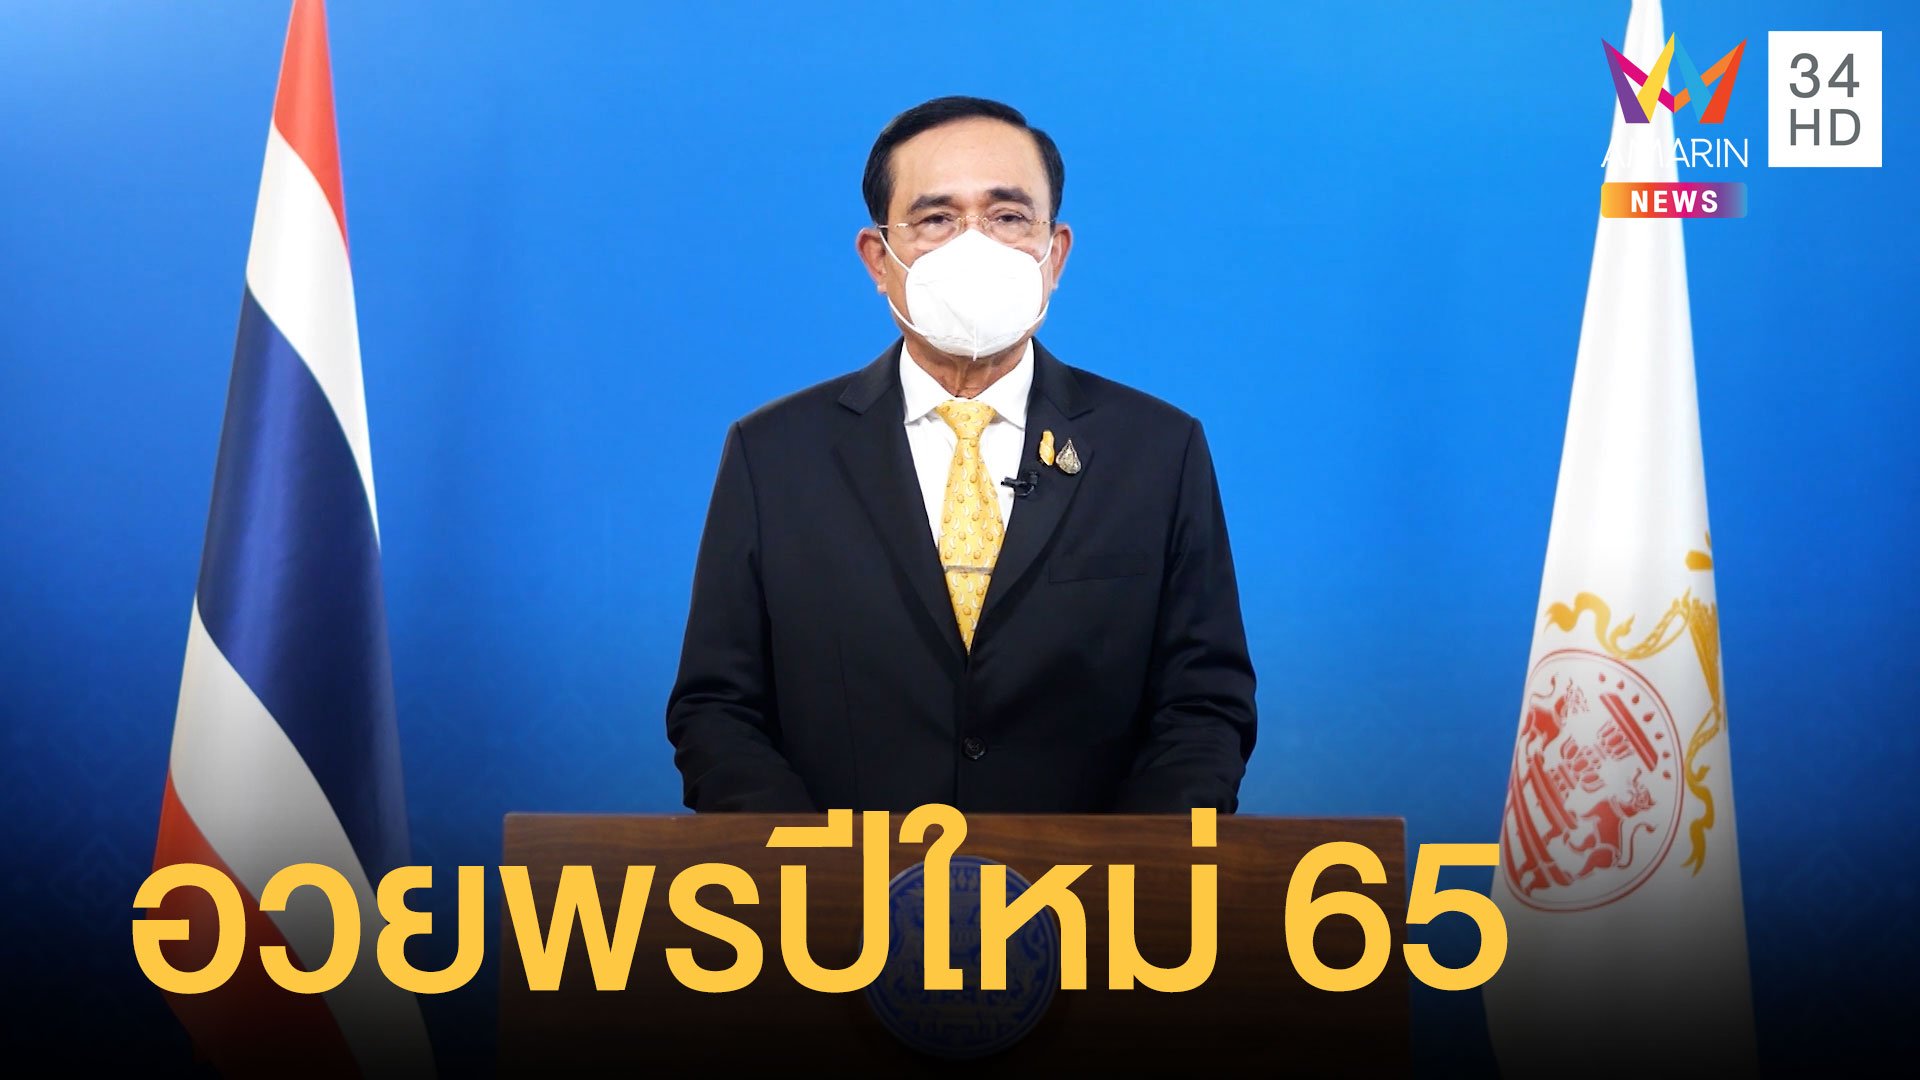 บิ๊กตู่ อวยพรปีใหม่ 2565 - เบิร์ด ธงชัย ส่งความสุขให้คนไทย | ข่าวอรุณอมรินทร์ | 1 ม.ค. 65 | AMARIN TVHD34